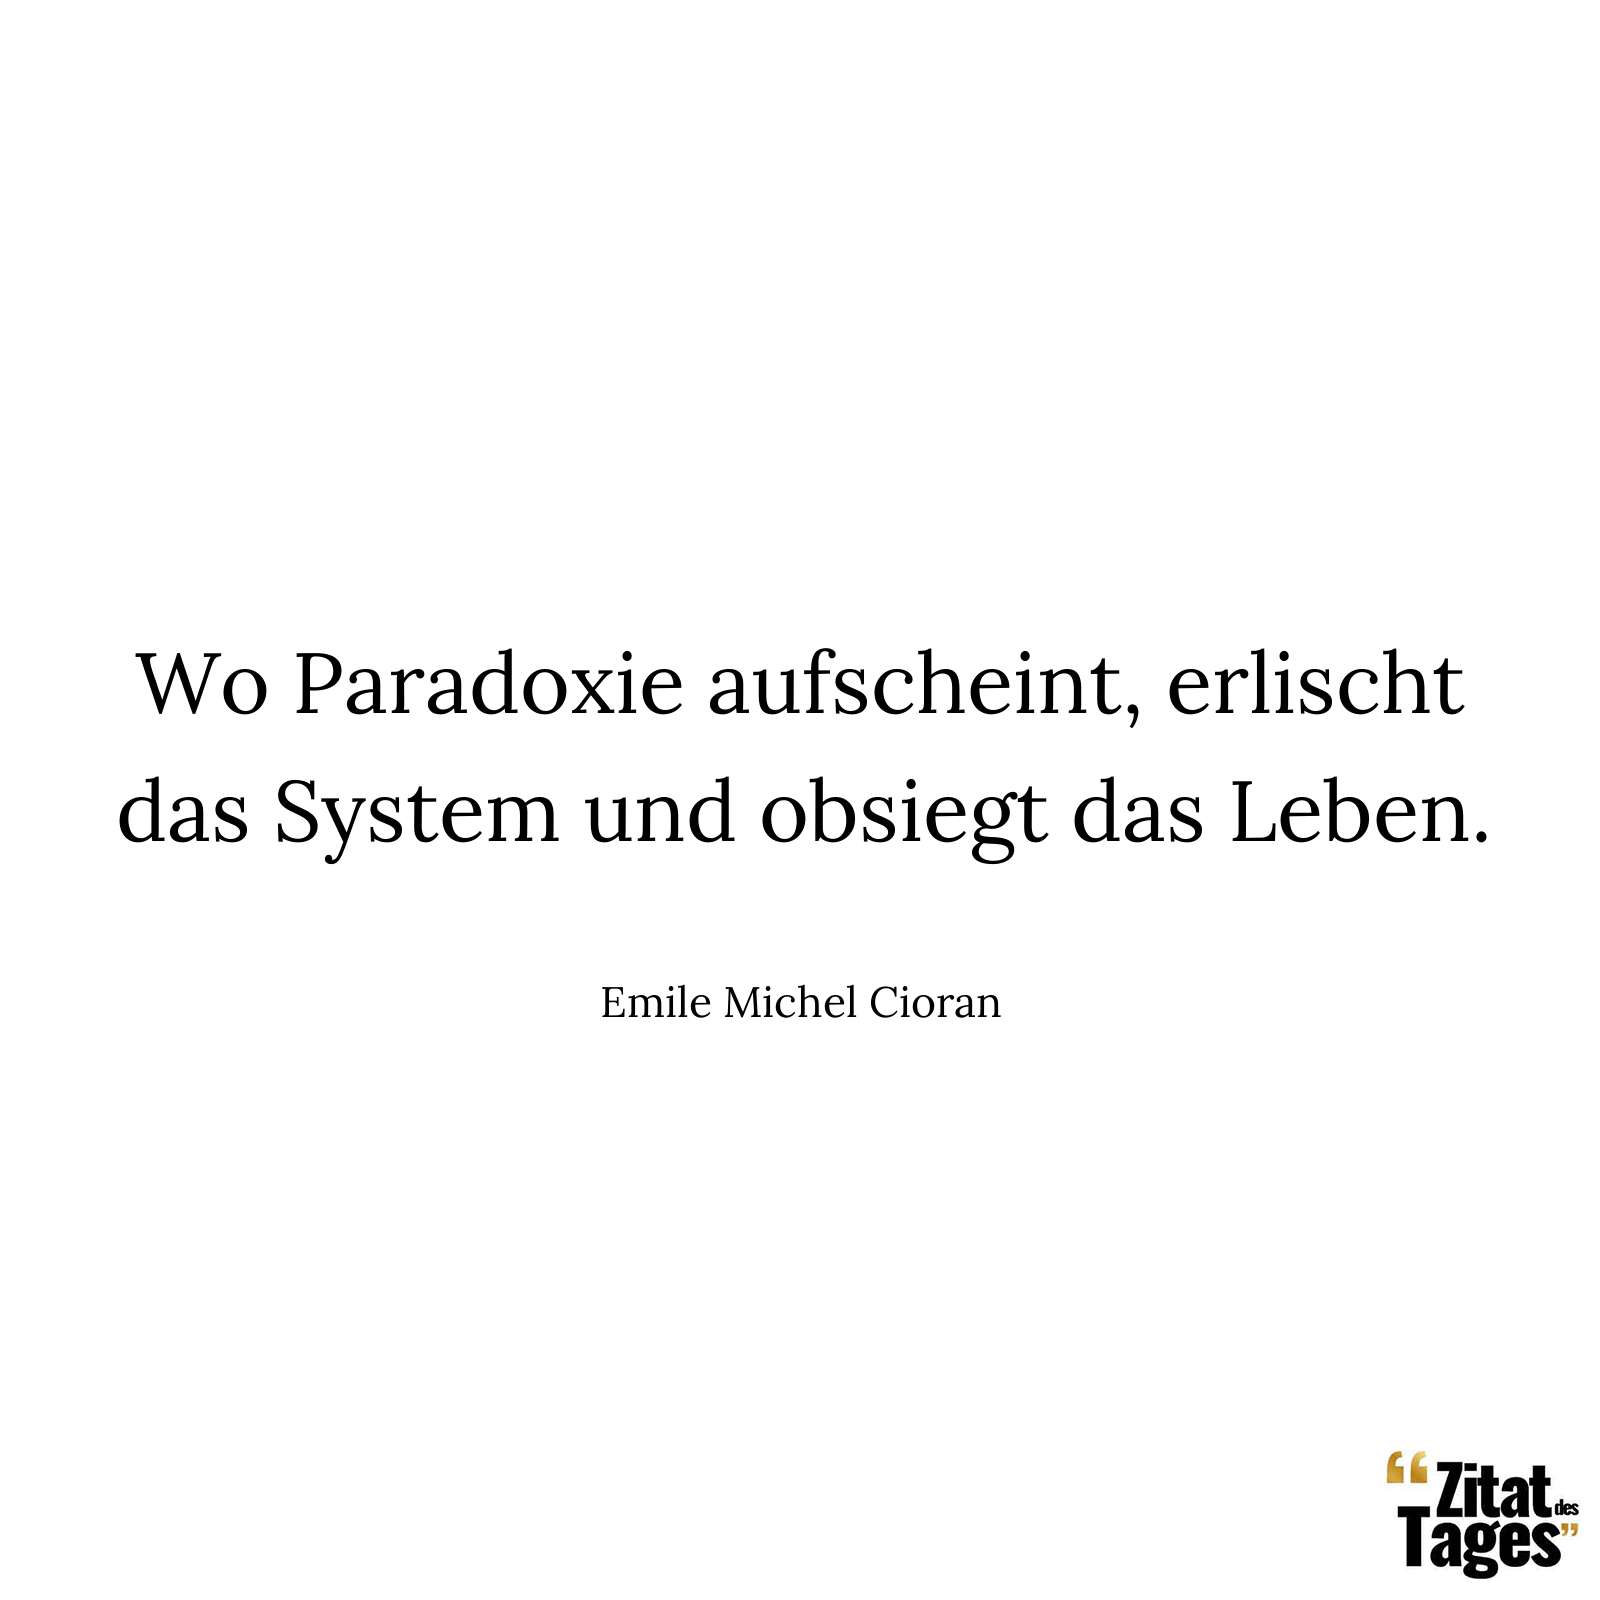 Wo Paradoxie aufscheint, erlischt das System und obsiegt das Leben. - Emile Michel Cioran